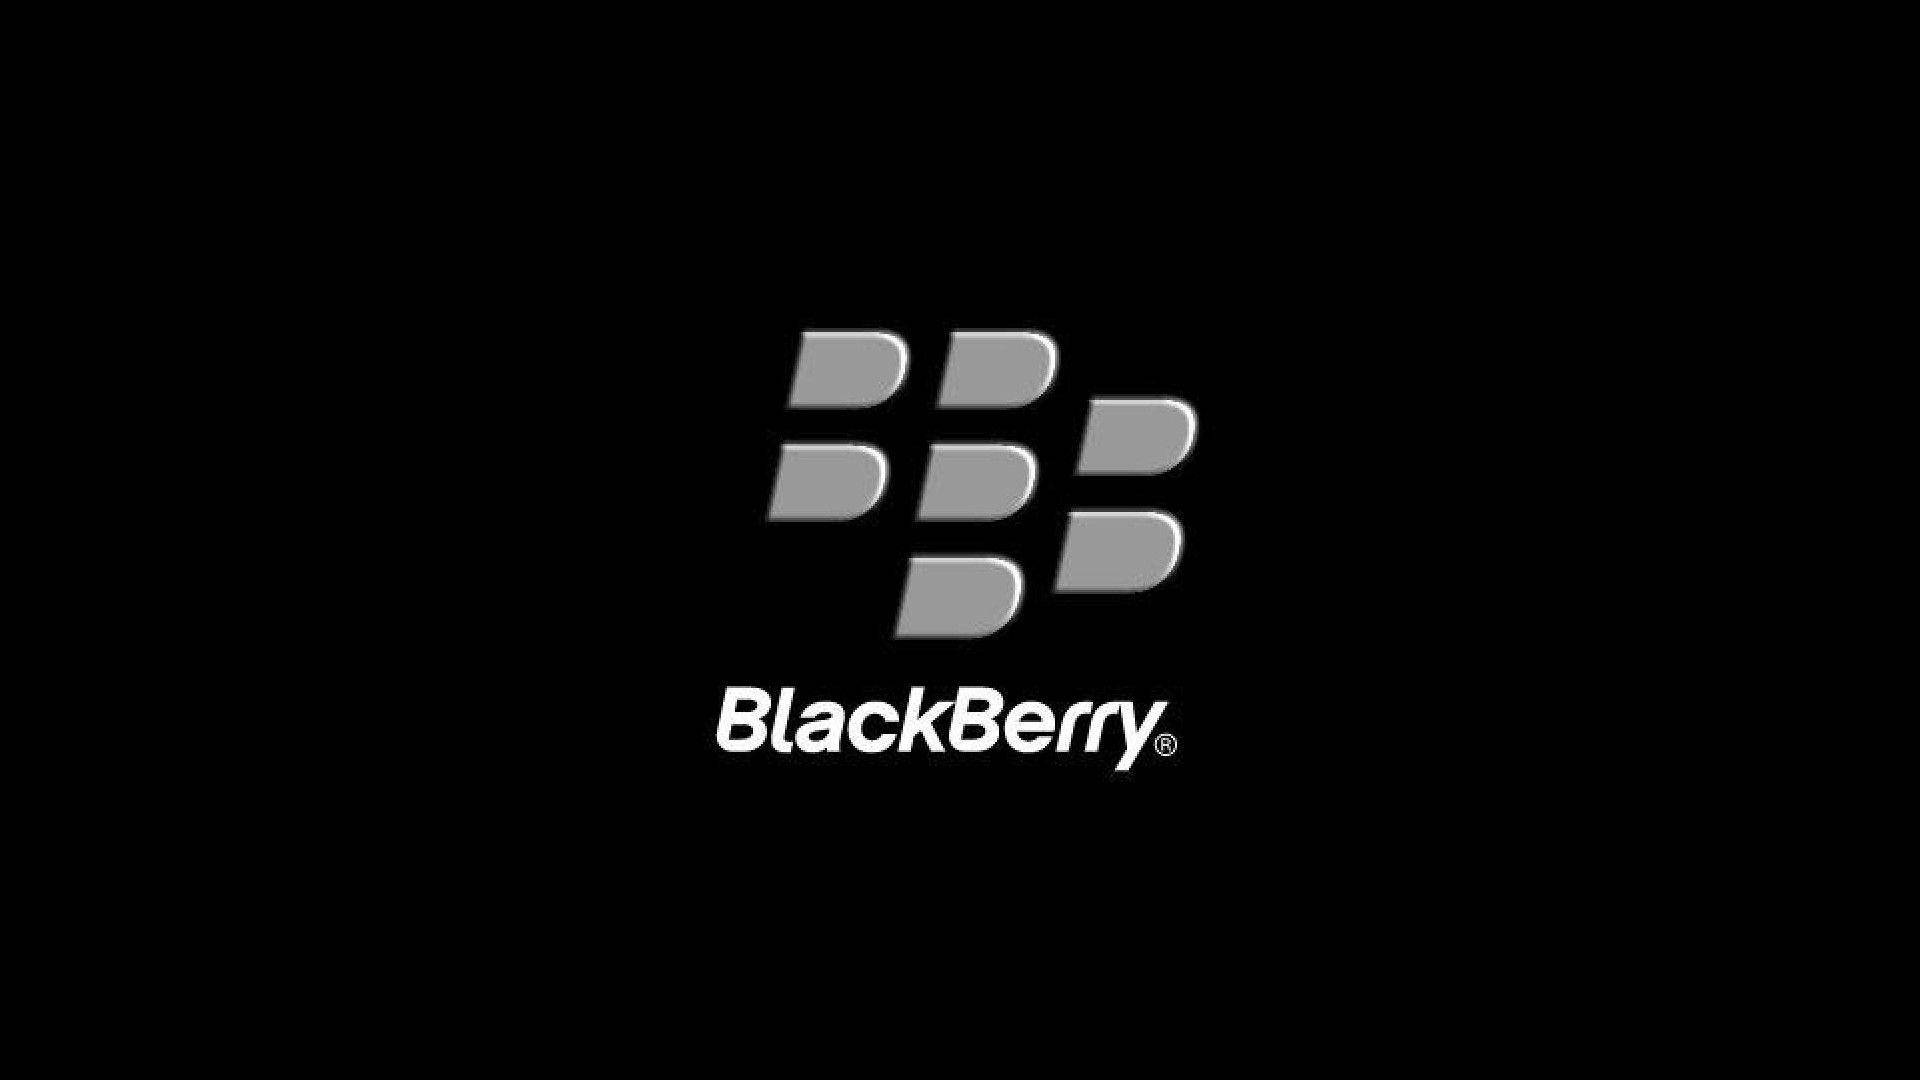 Logode Blackberry En Gris Y Negro. Fondo de pantalla